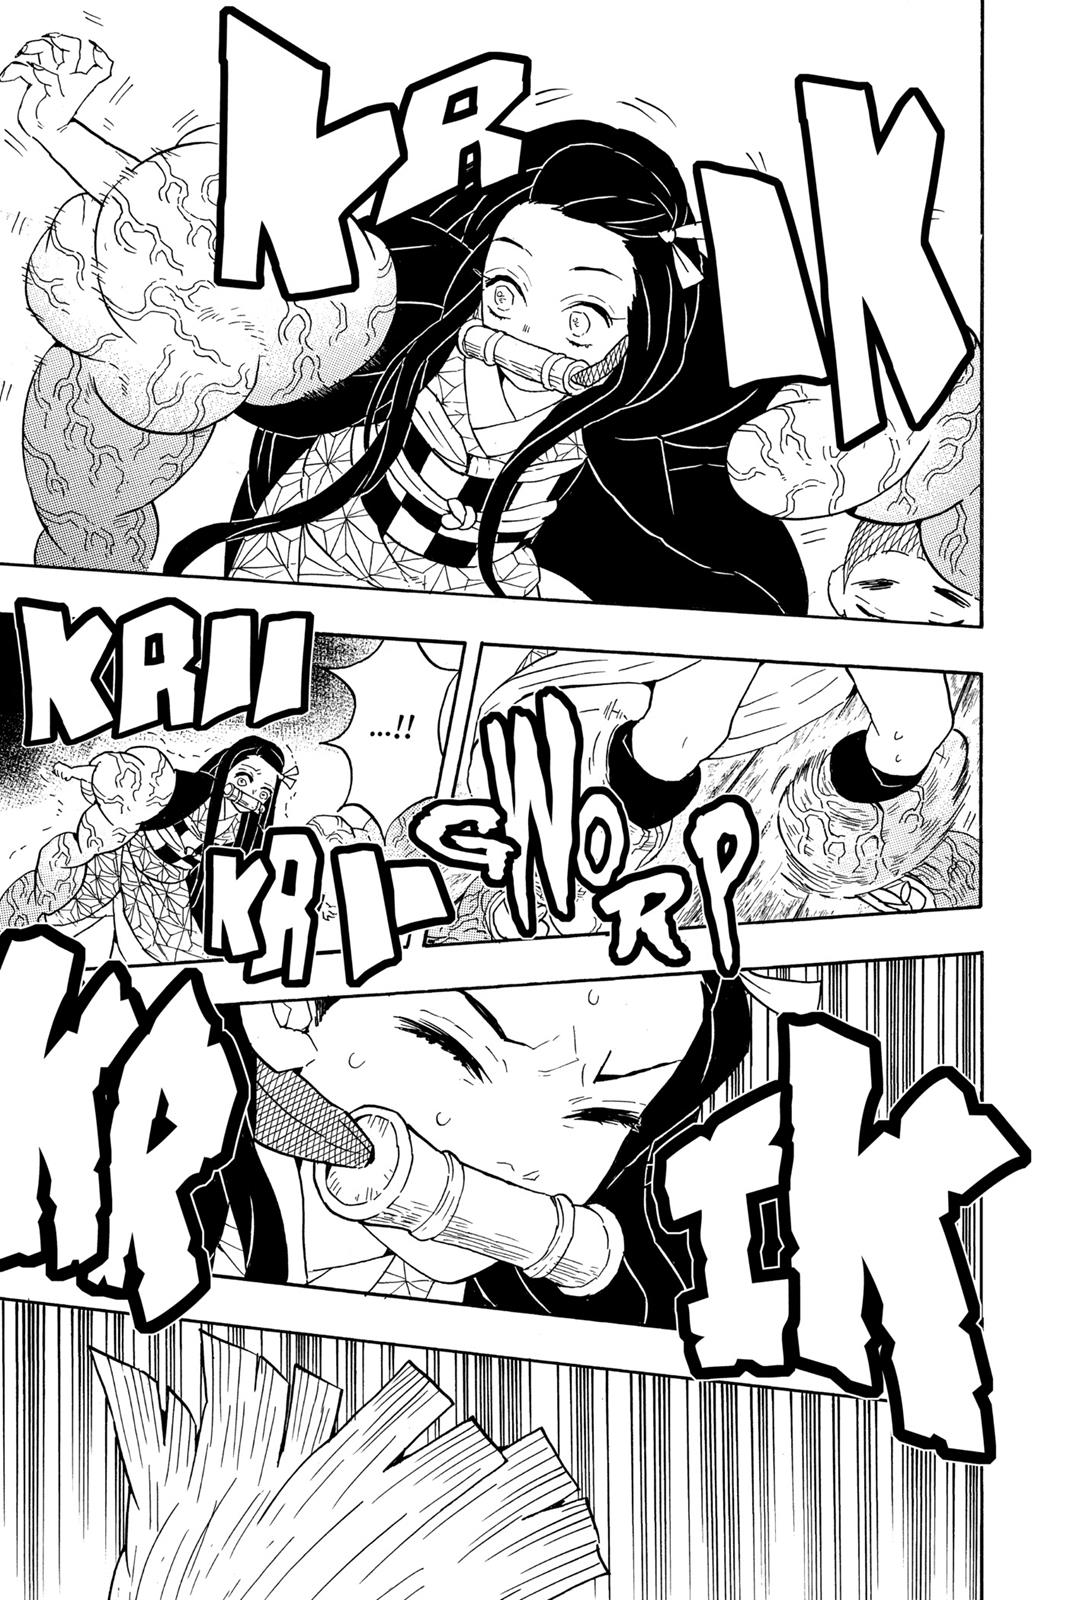 Demon Slayer Manga Manga Chapter - 60 - image 7